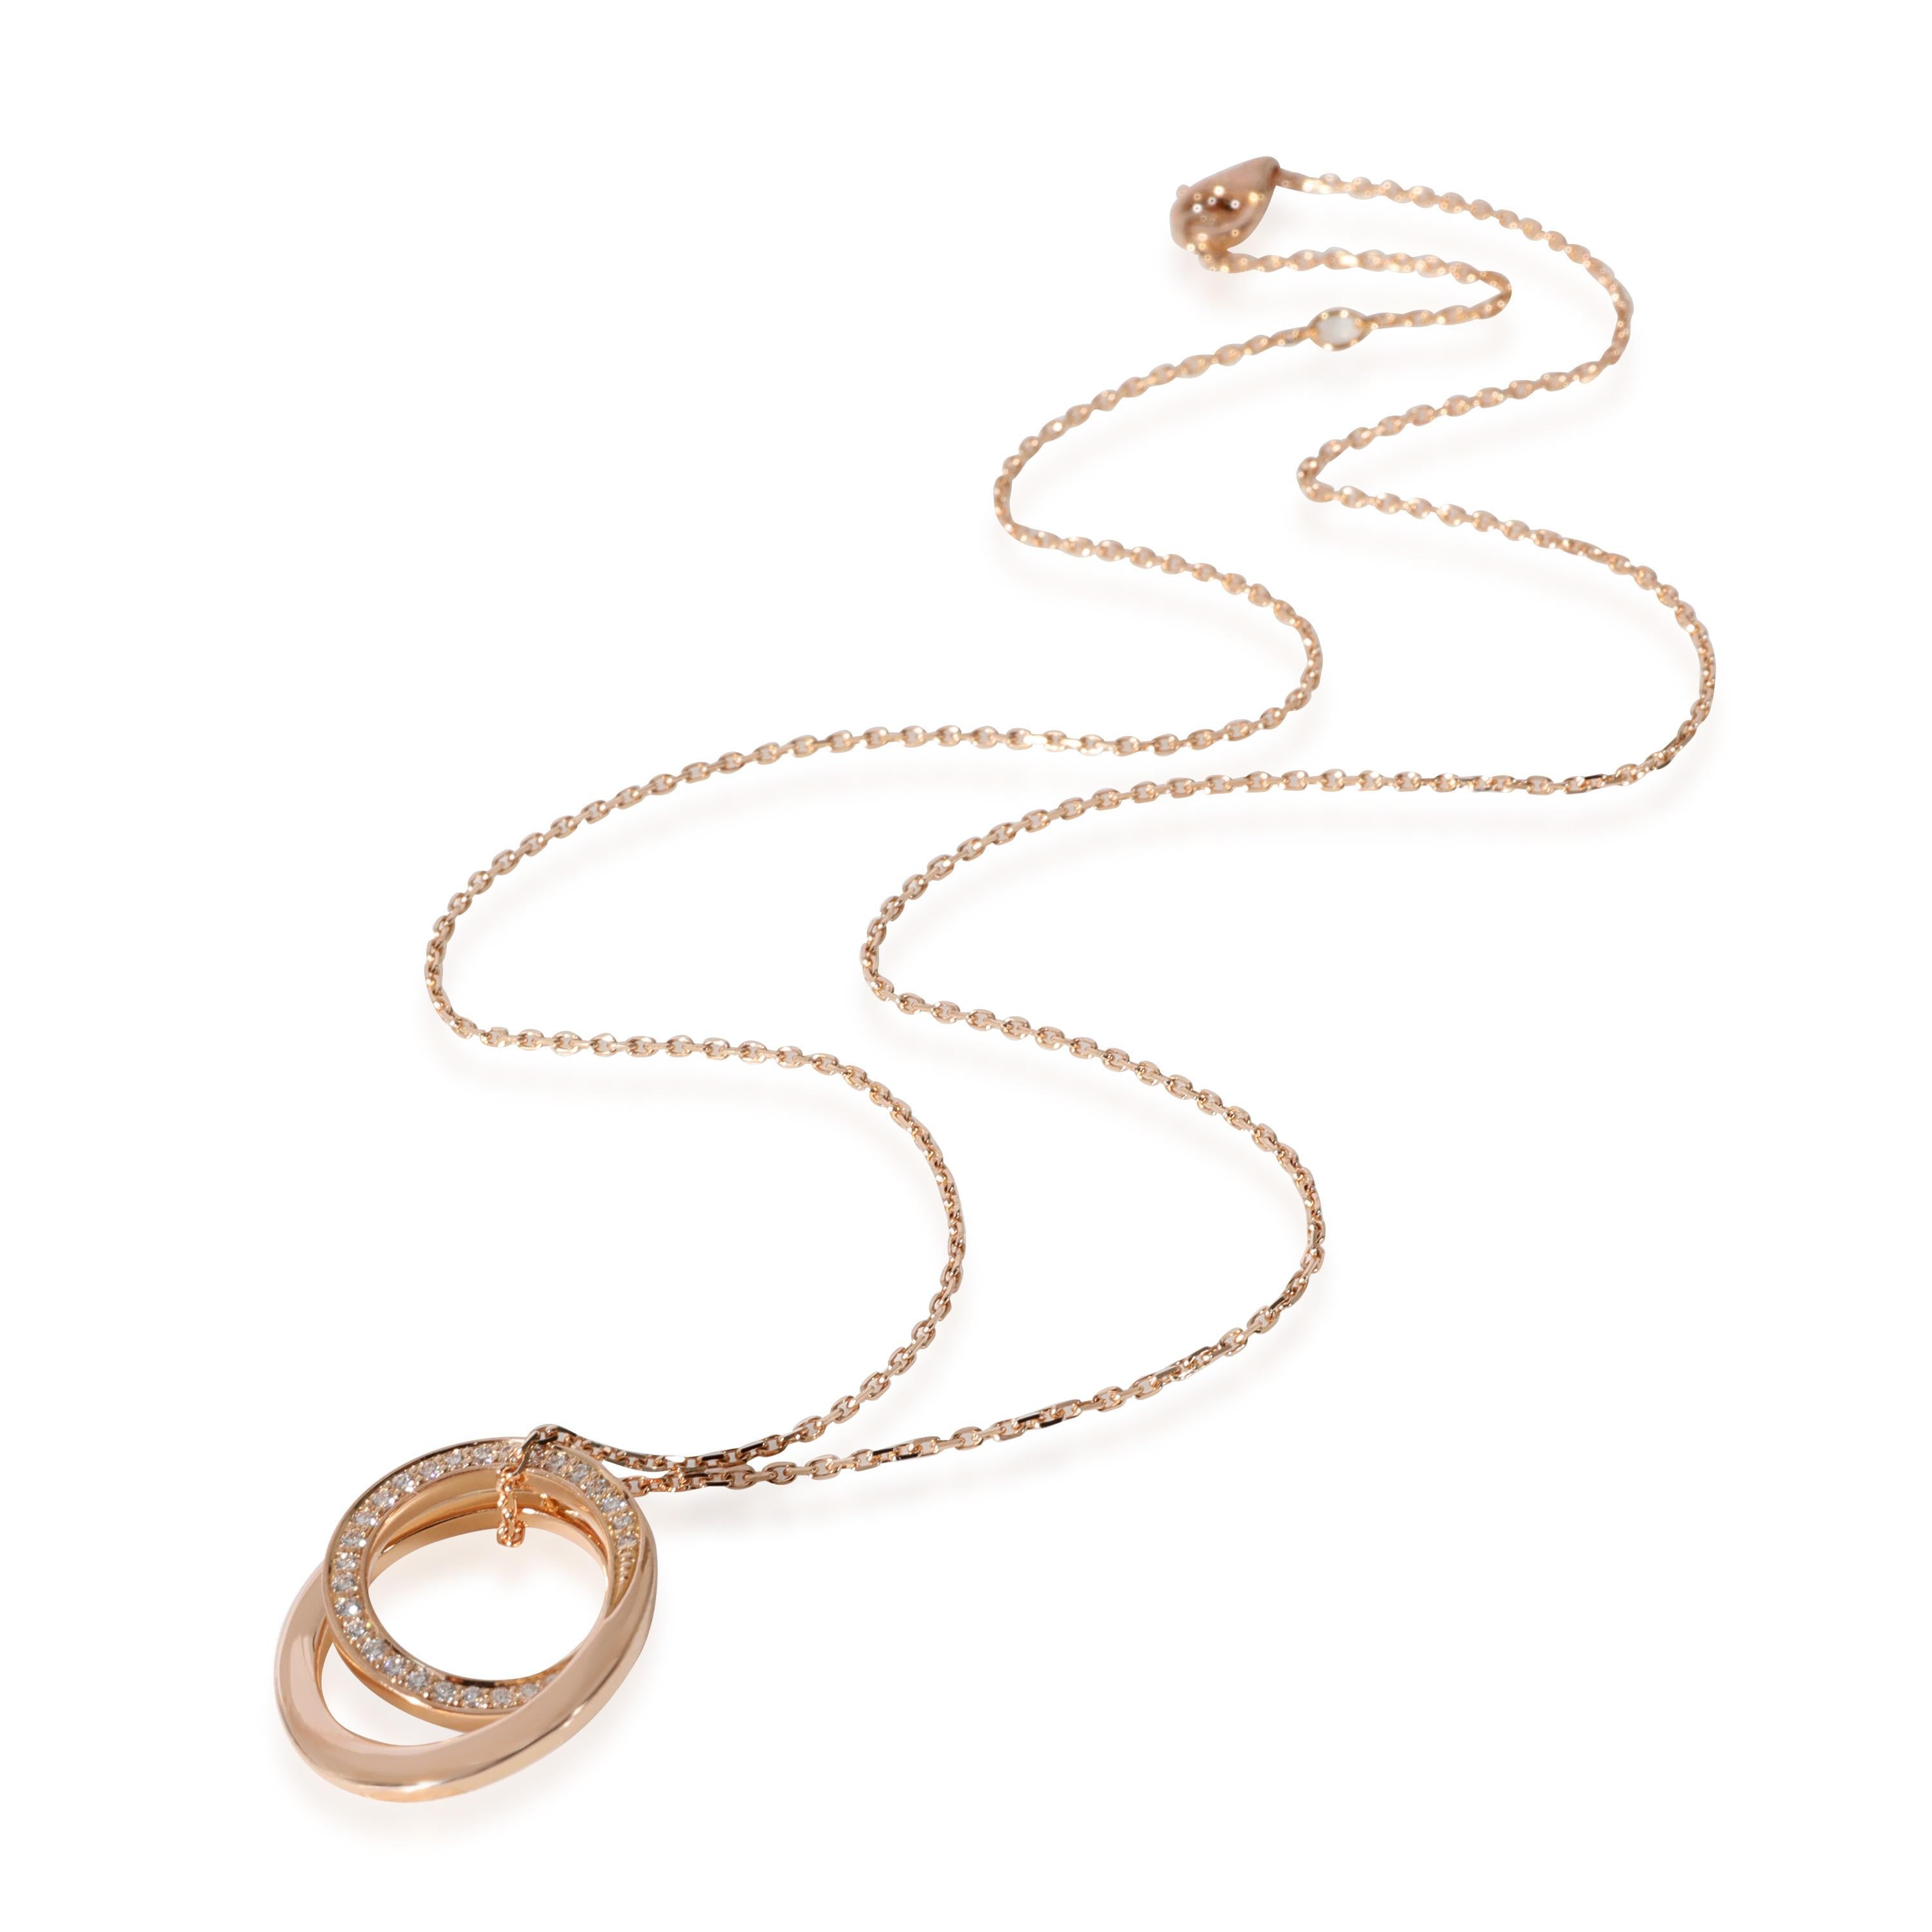 CRB6049817 - Etincelle de Cartier bracelet - Pink gold, diamonds